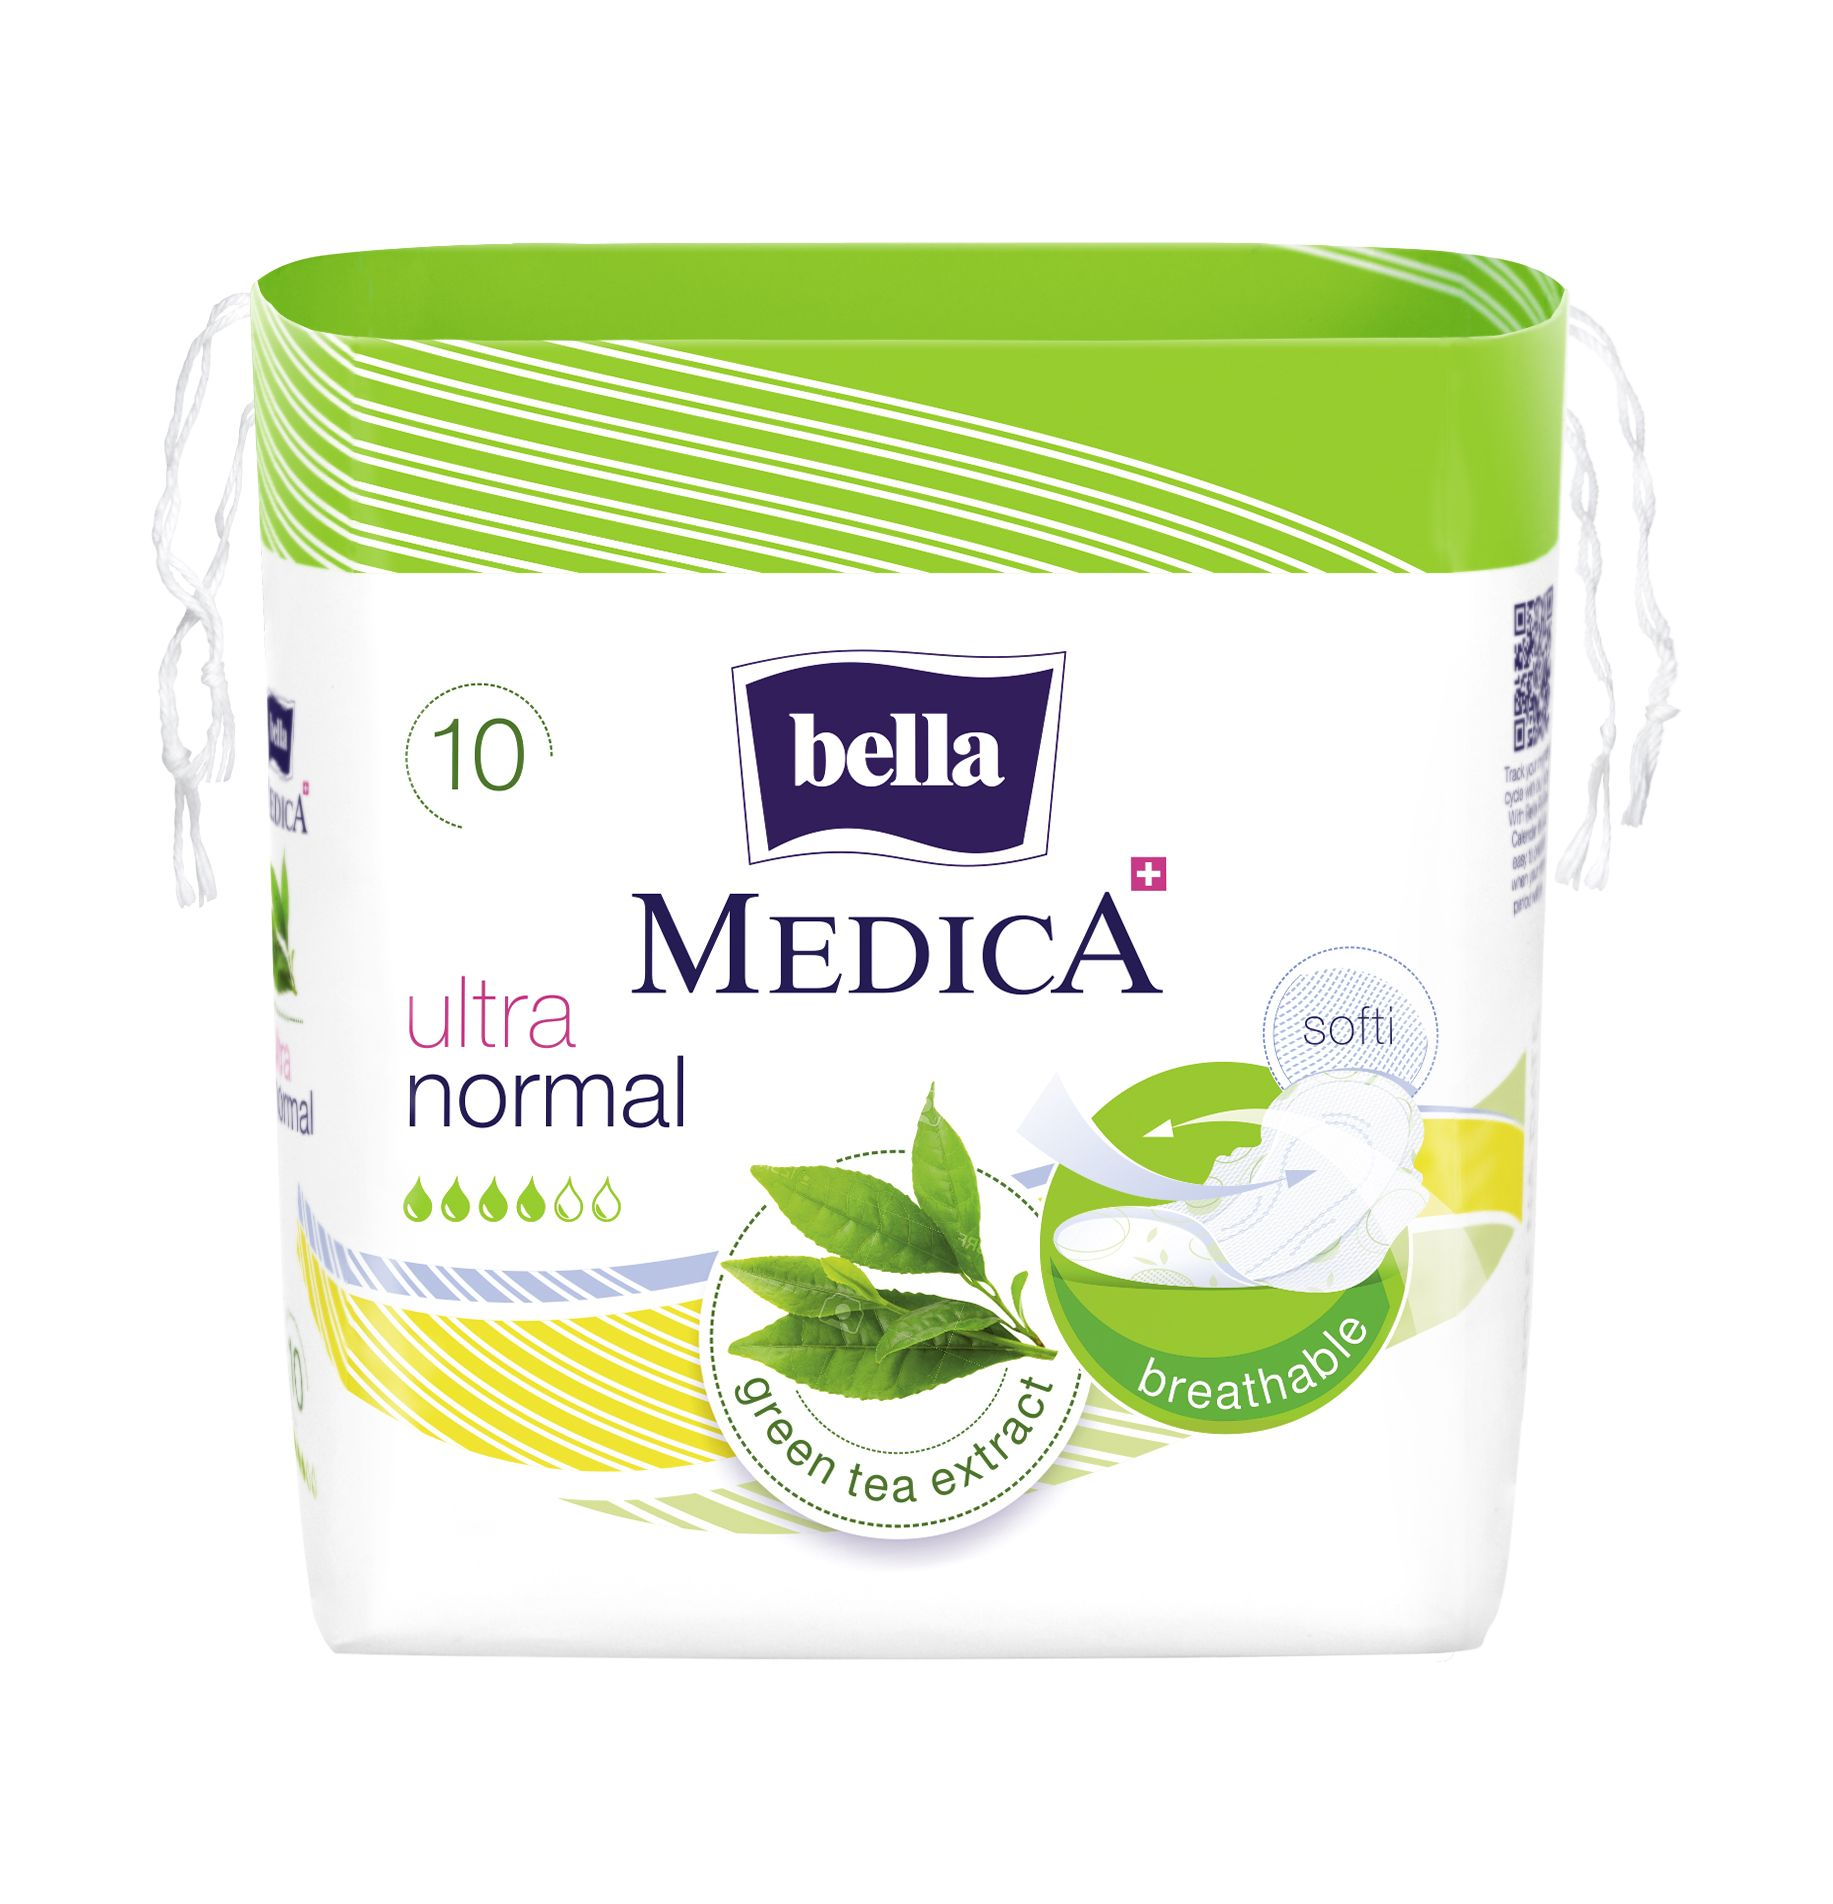 Bella Medica Ultra Normal ultratenké vložky 10 ks Bella